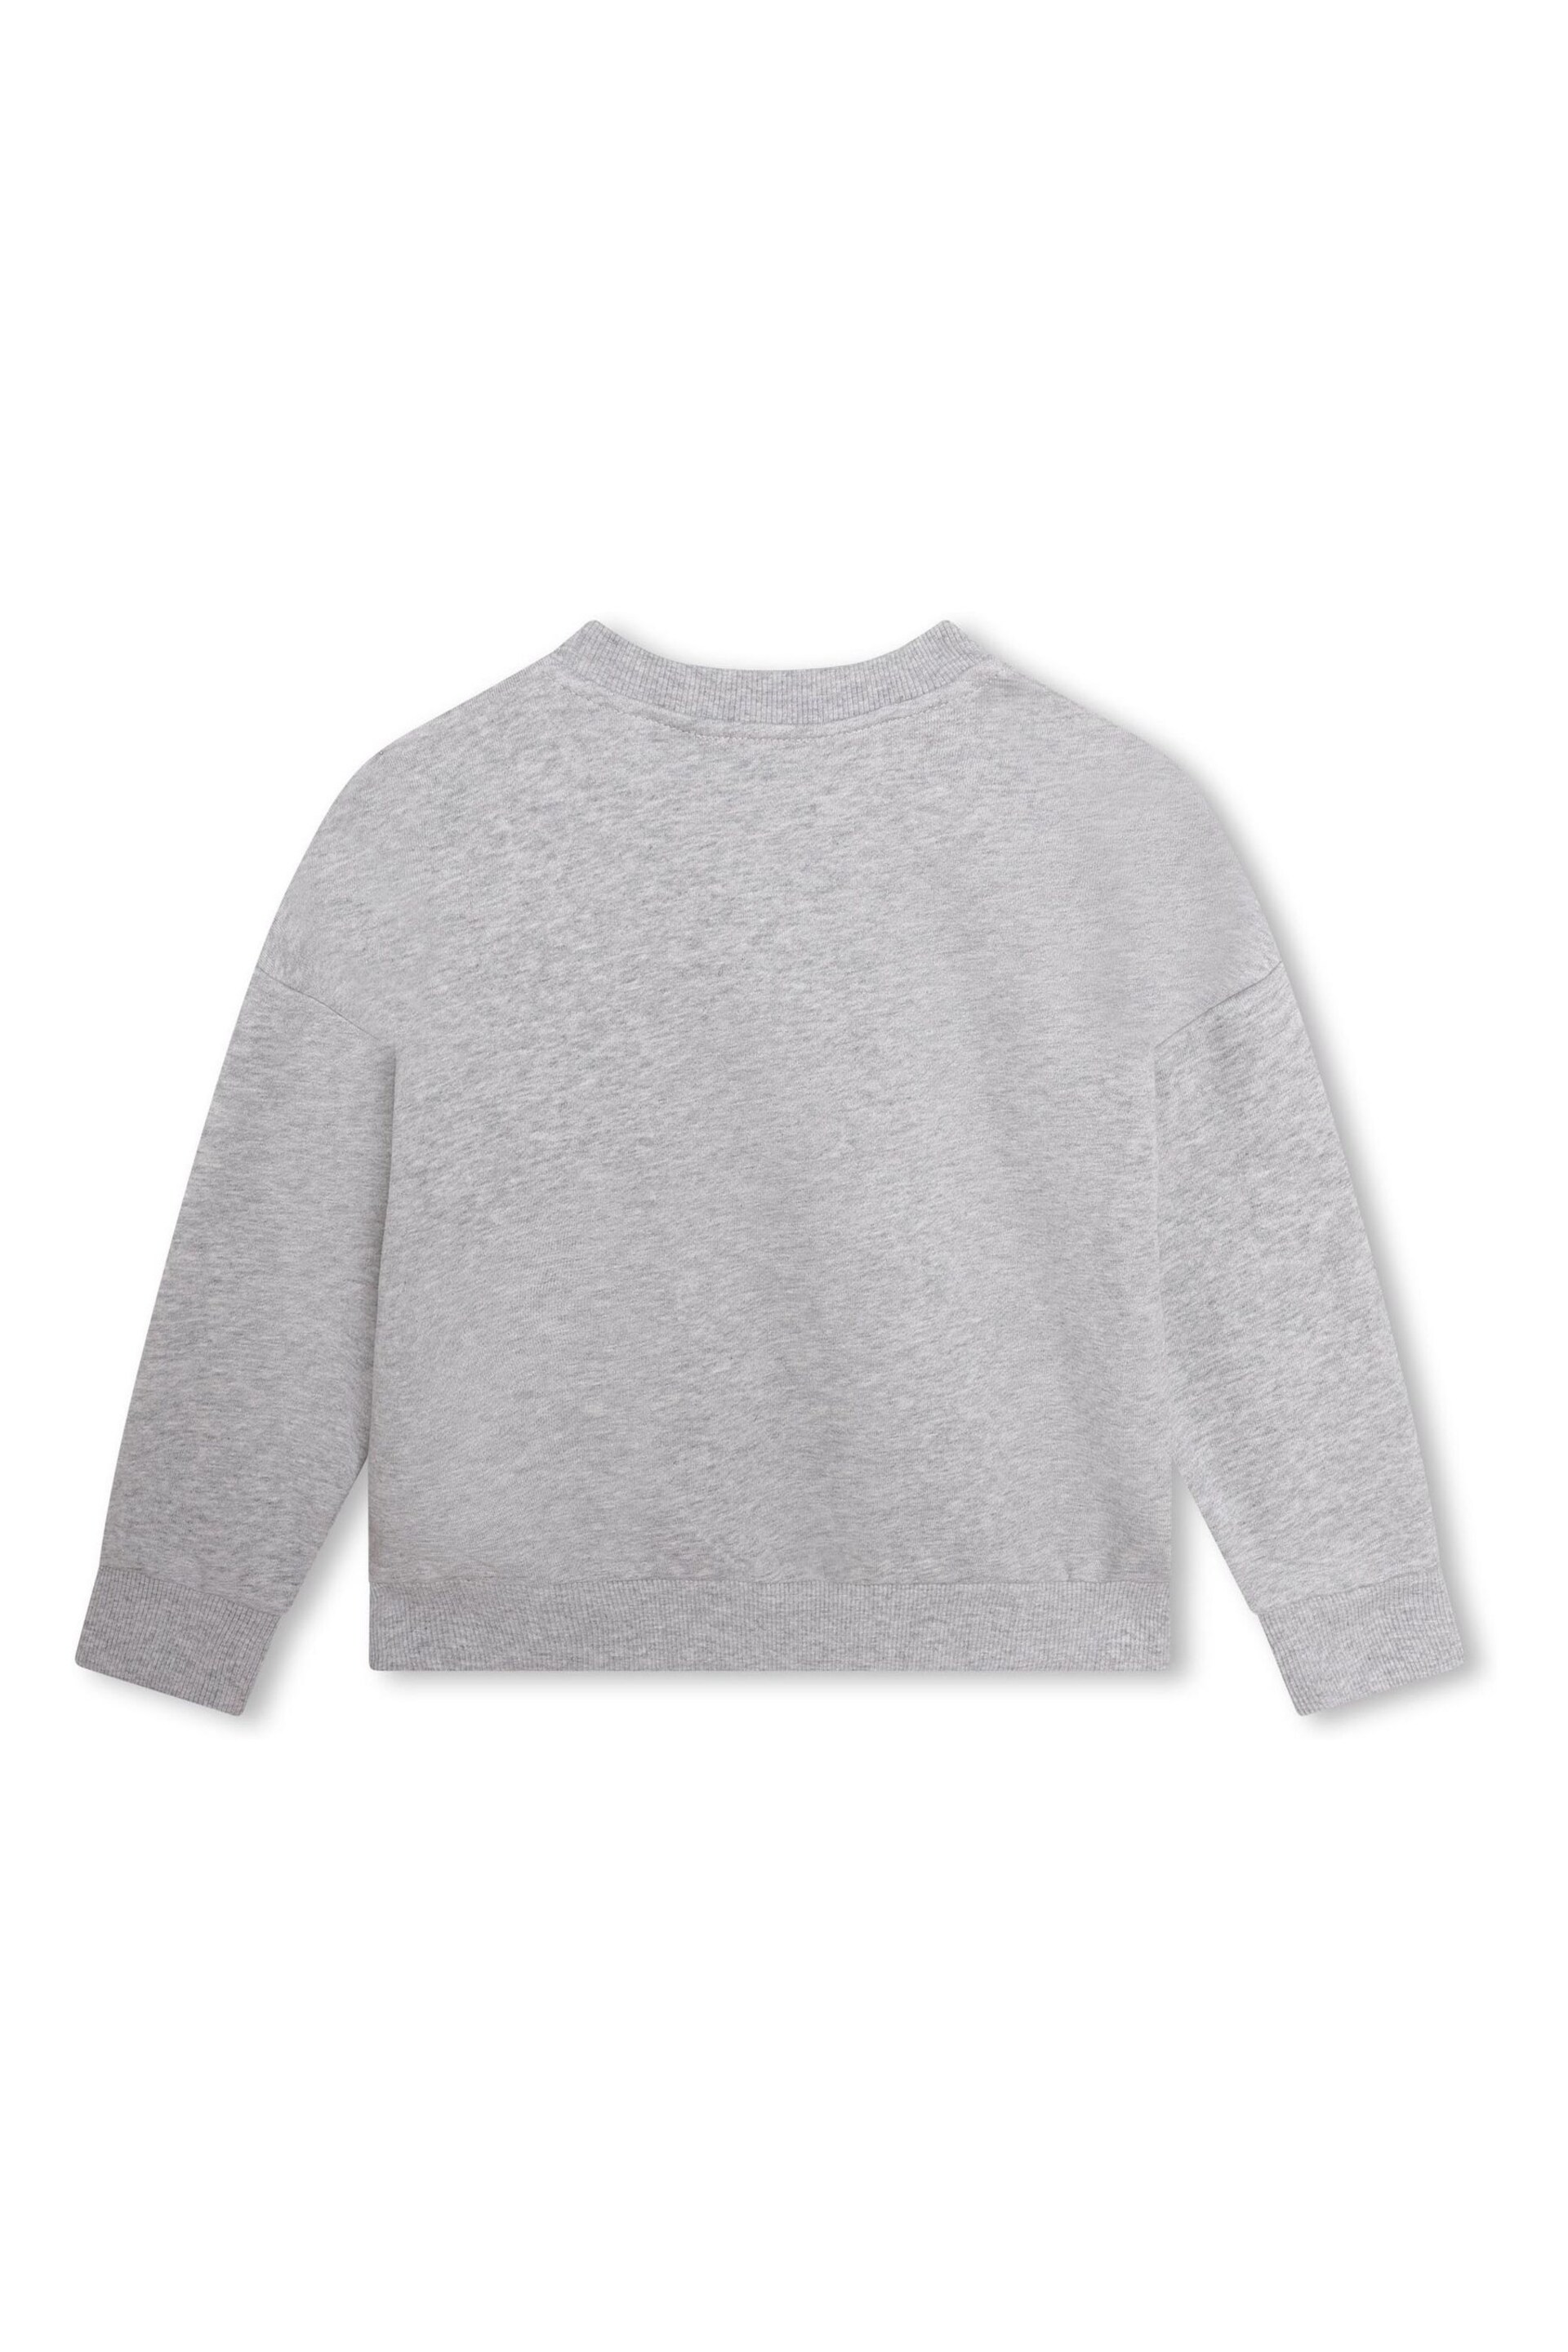 Kenzo Kids Grey Logo Sweatshirt - Image 2 of 3